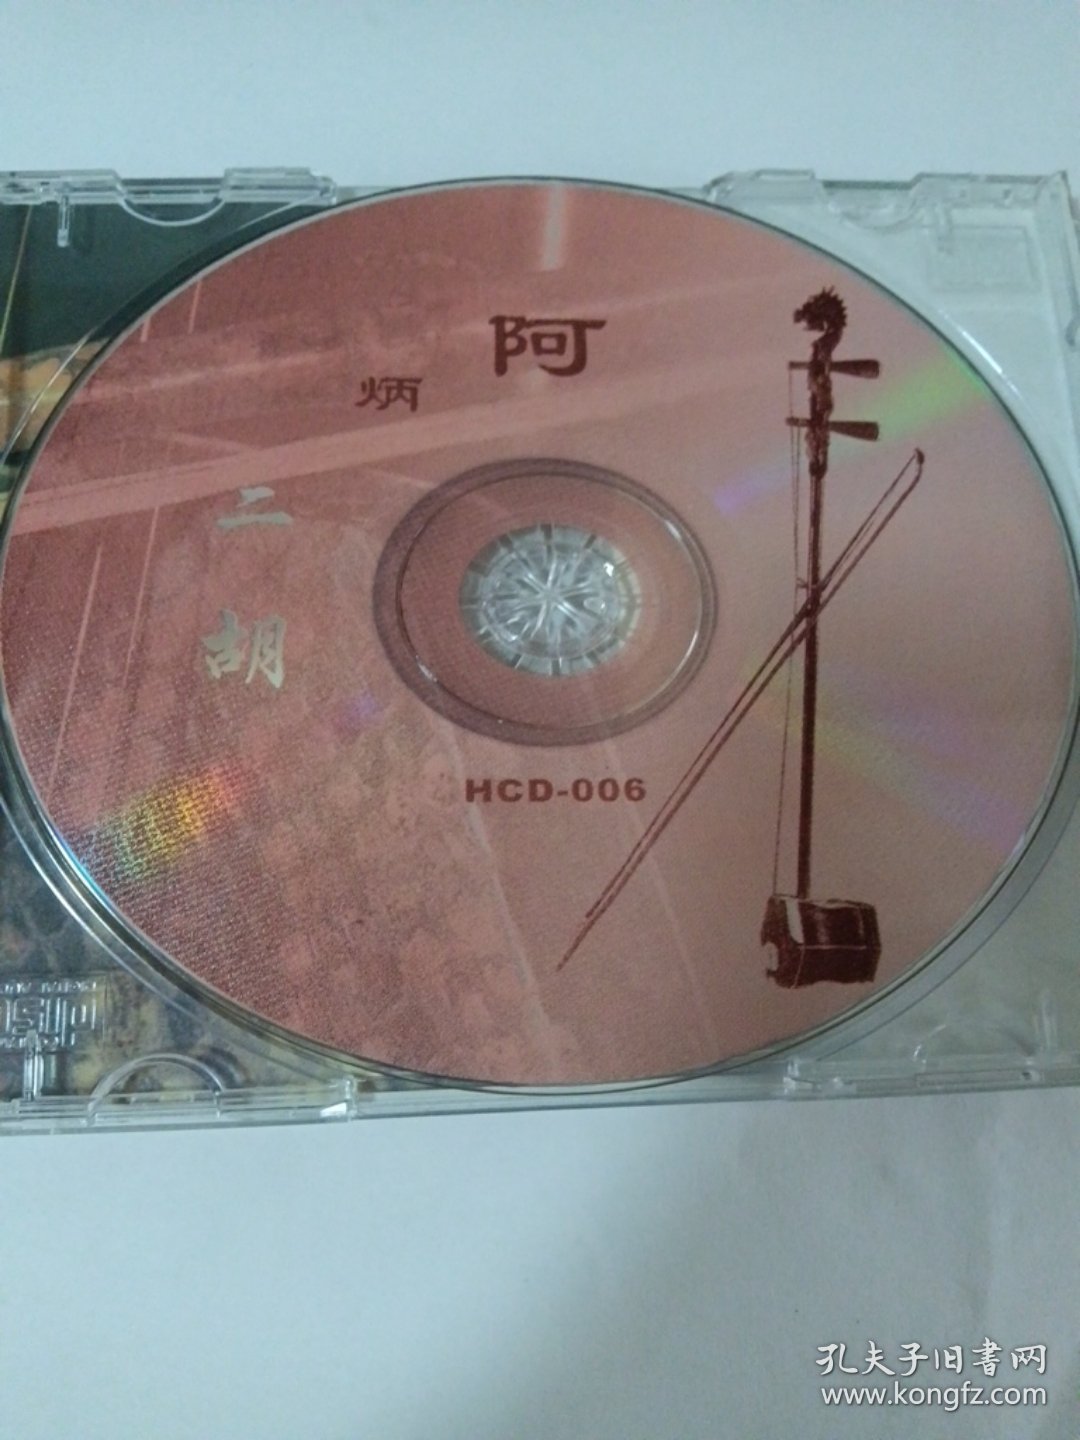 歌曲CD：二胡传说 1CD 多单合并运费